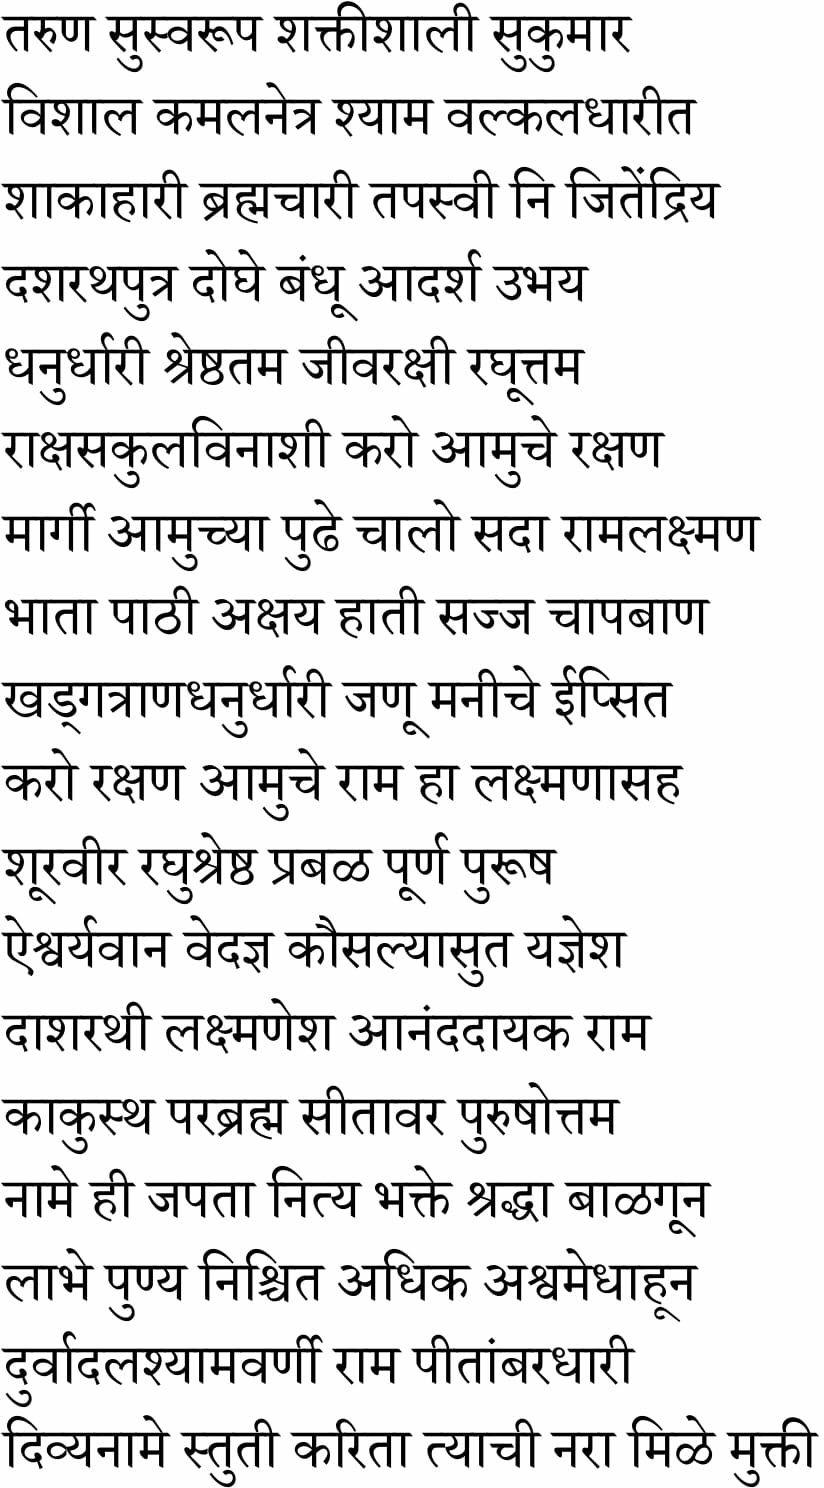 meaning of ramraksha stotra in hindi